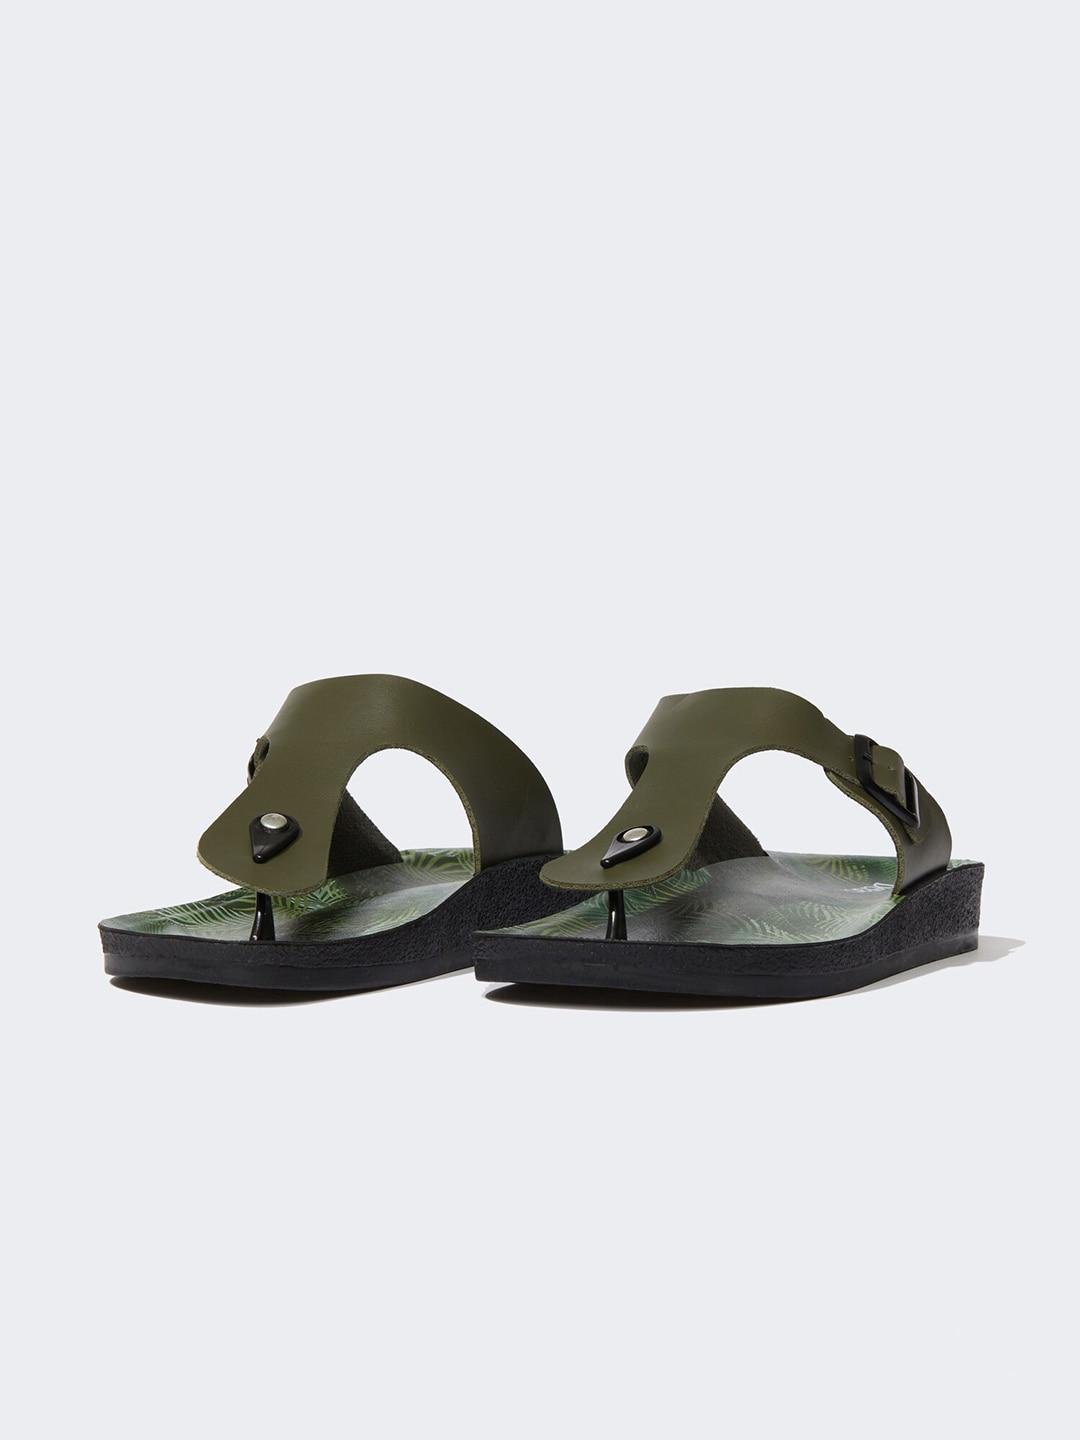 defacto men open toe comfort sandals with buckle detail